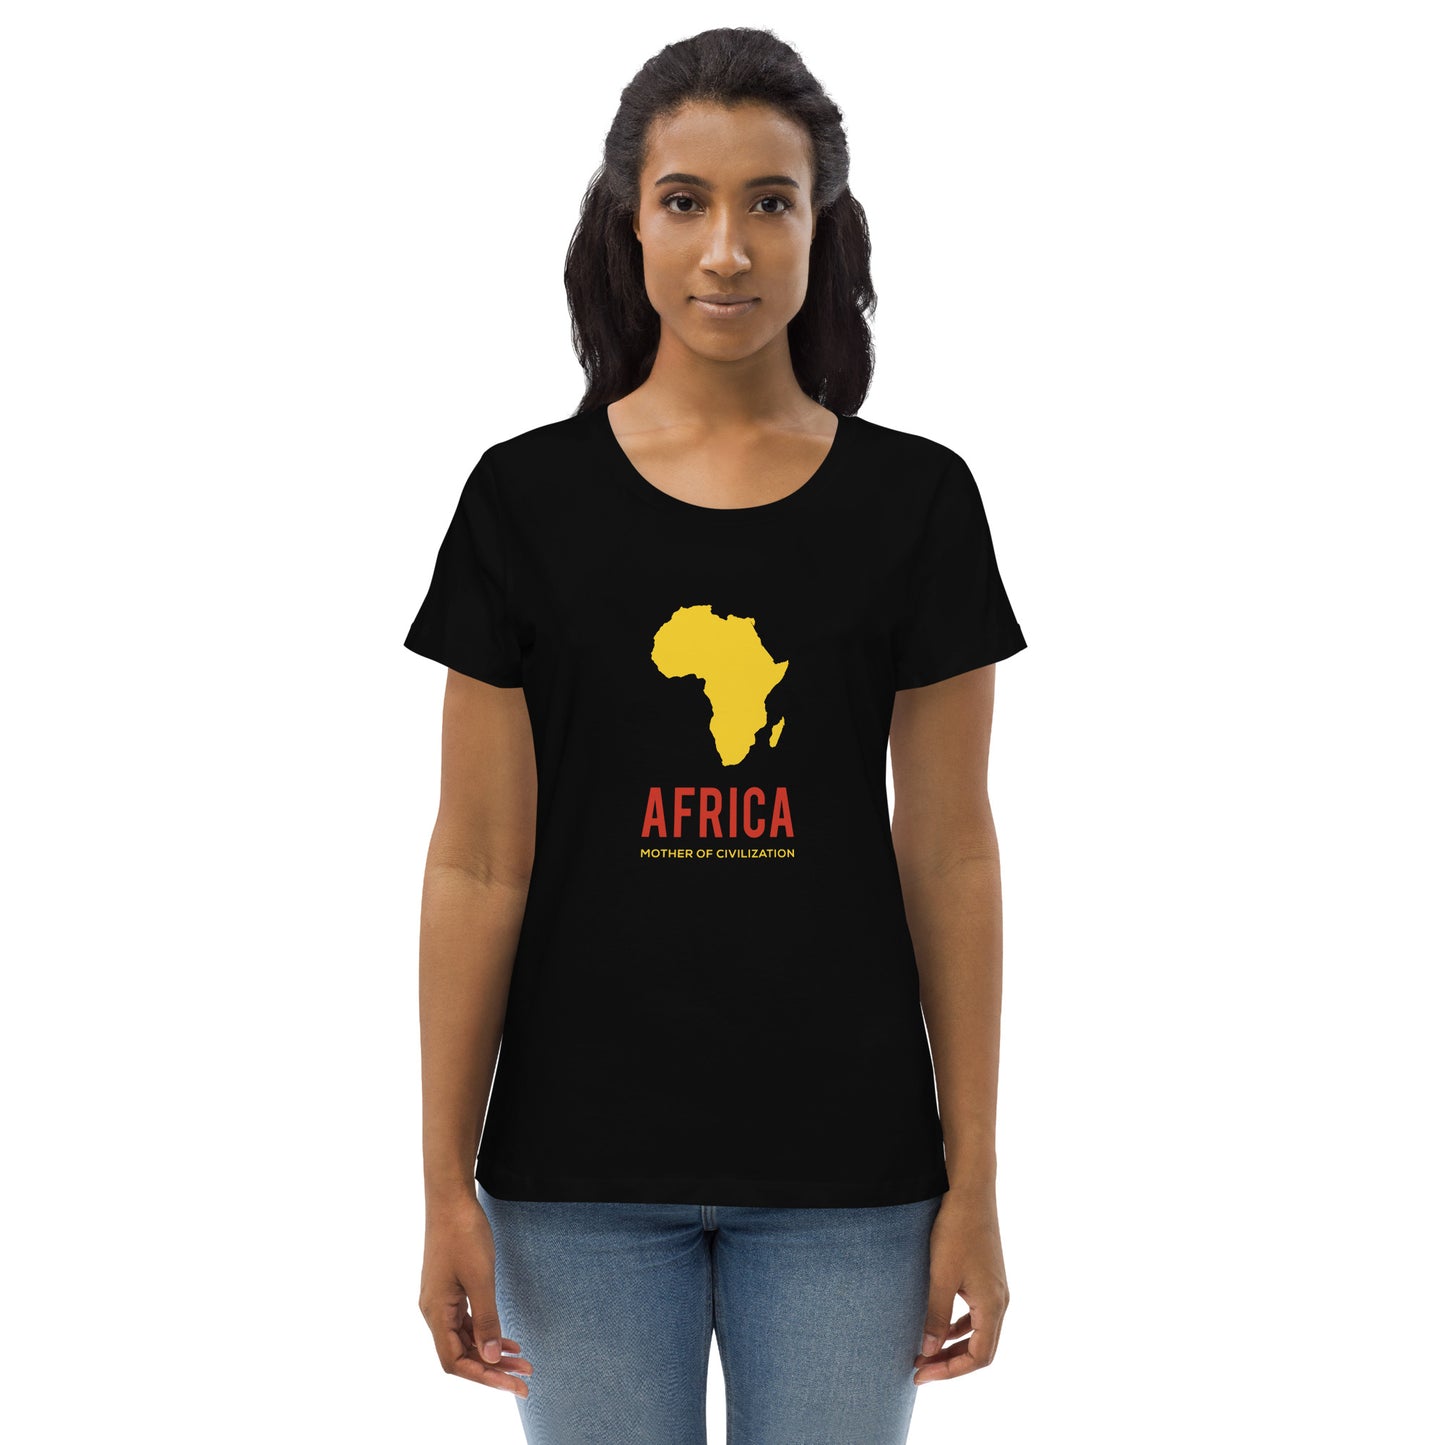 AFRICA - MOTHER OF CIVILIZATION Women's Tee